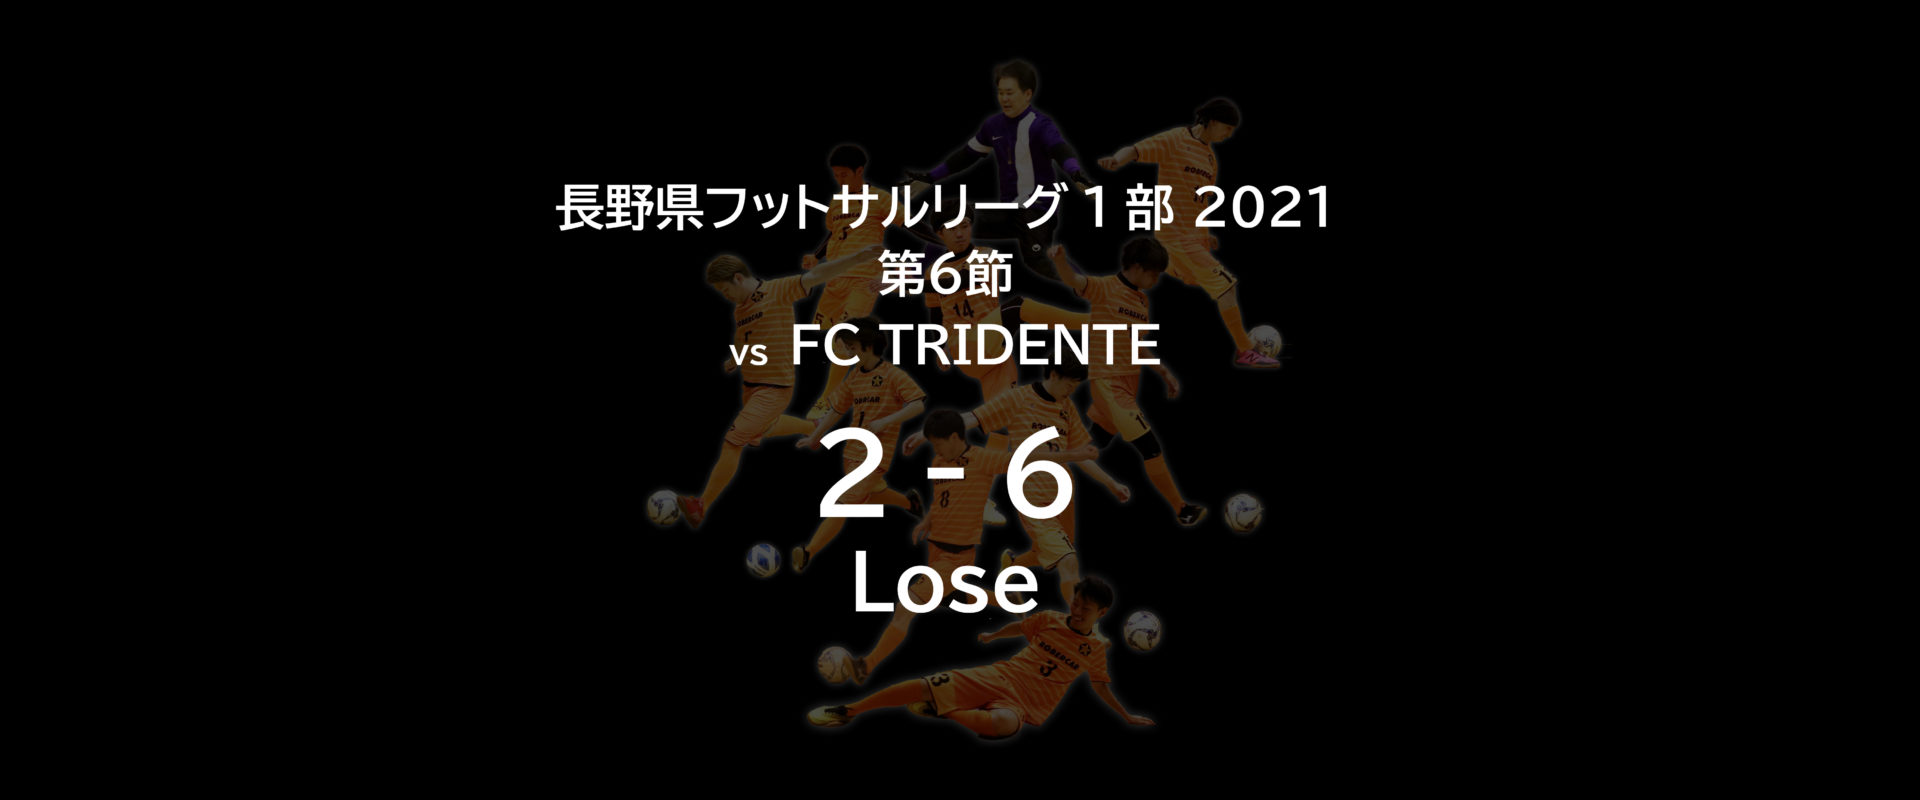 ロベルカル vs FC TRIDENTE